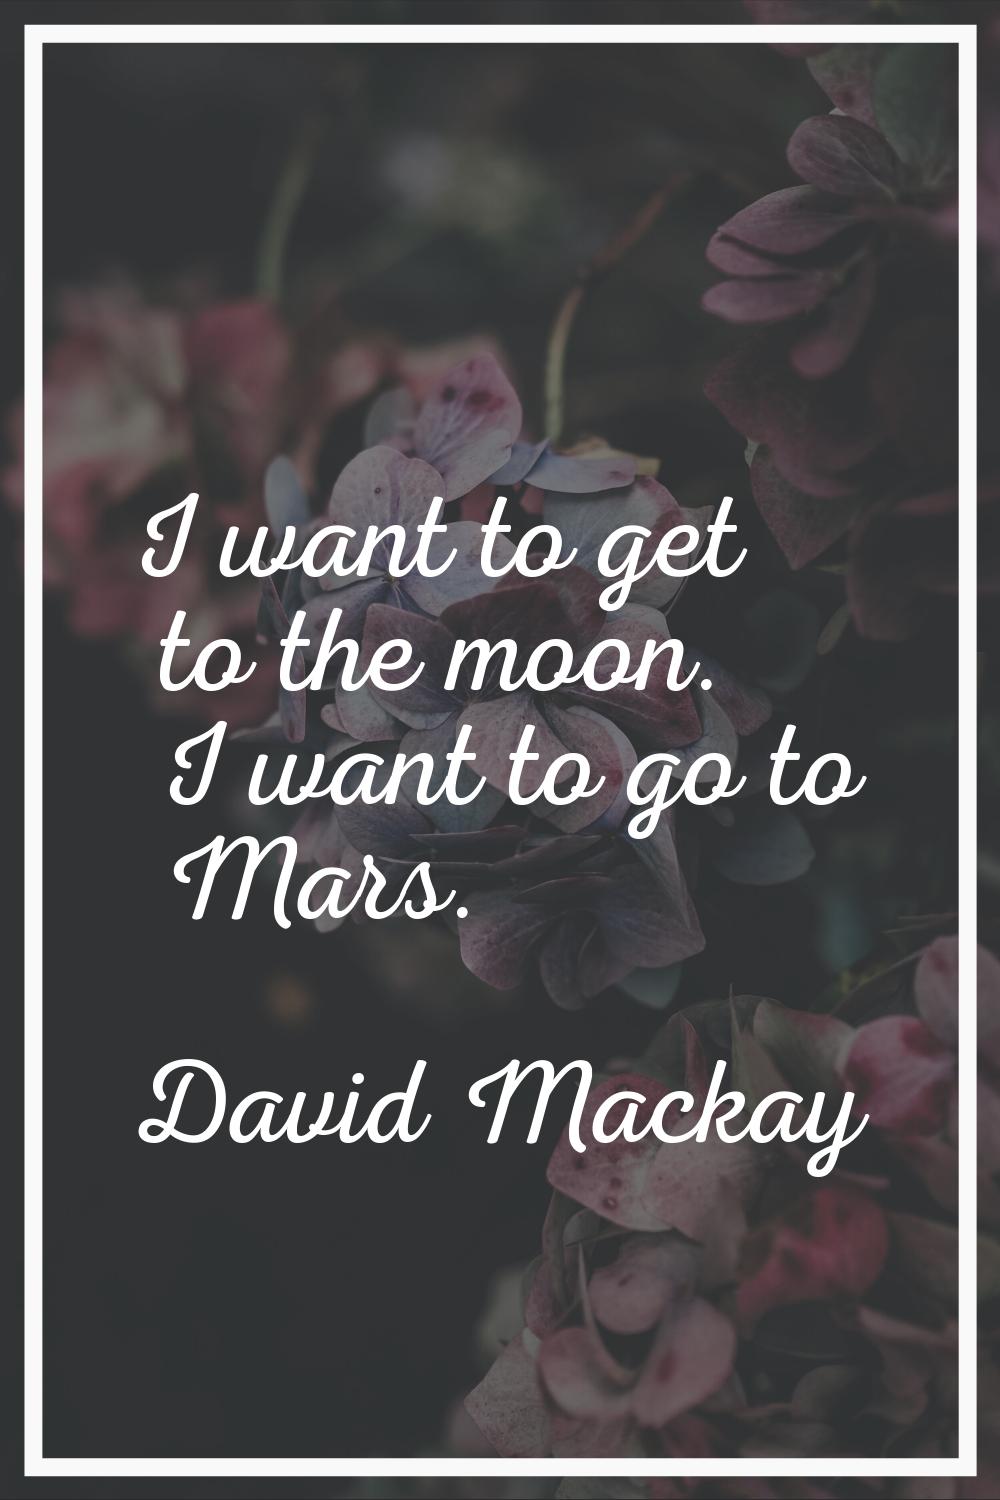 I want to get to the moon. I want to go to Mars.